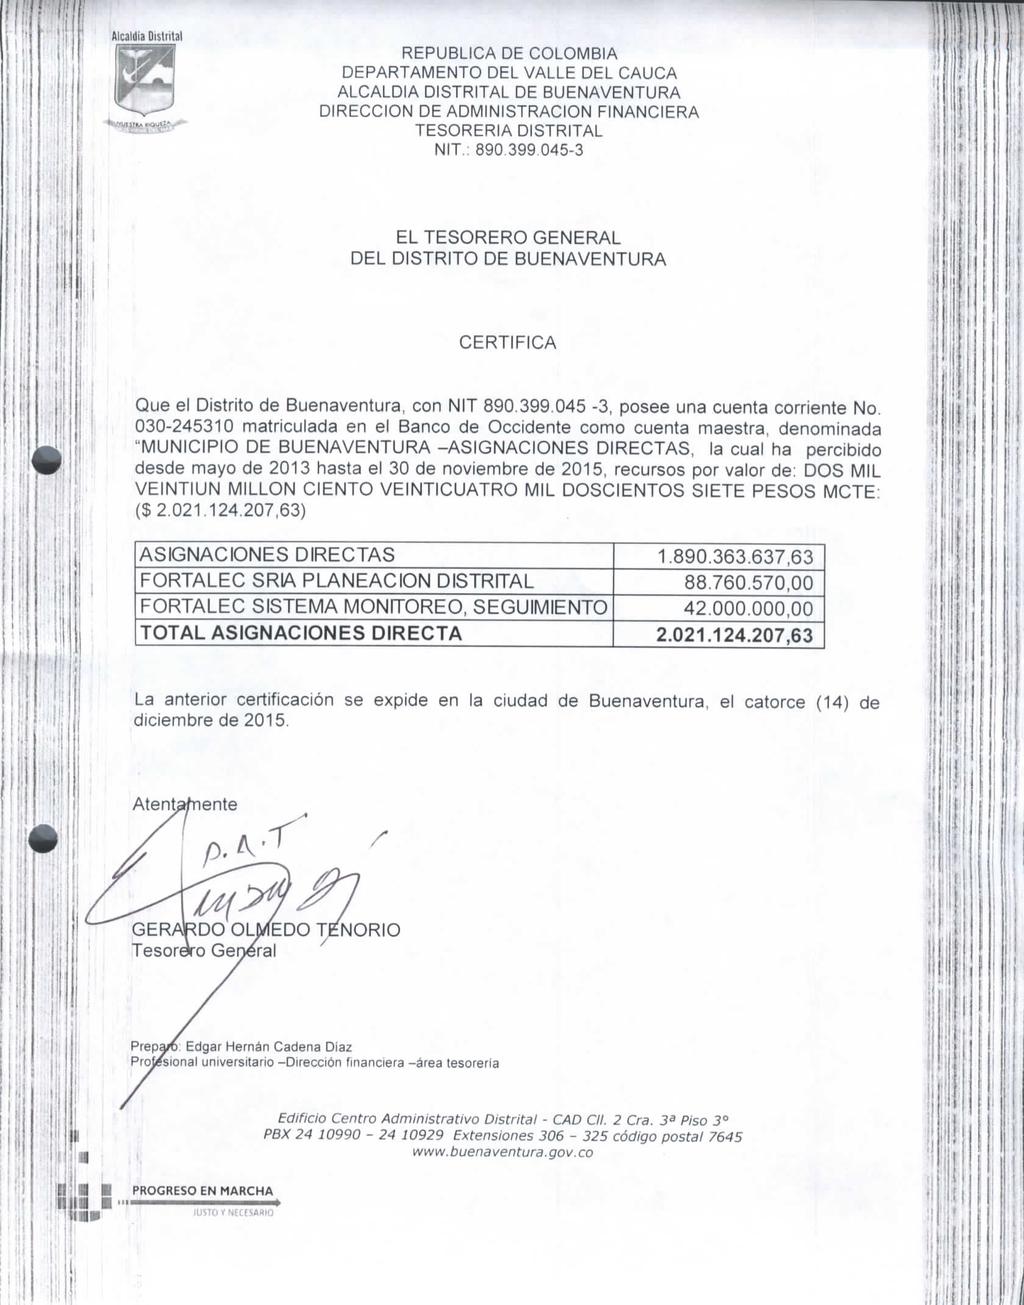 mm i i ' J i!' REPÚBLICA DE COLOMBIA DEPARTAMENTO DEL VALLE DEL CAUCA ALCALDÍA DISTRITAL DE BUENAVENTURA DIRECCIÓN DE ADMINISTRACIÓN FINANCIERA TESORERÍA DISTRITAL NIT.: 89.399.